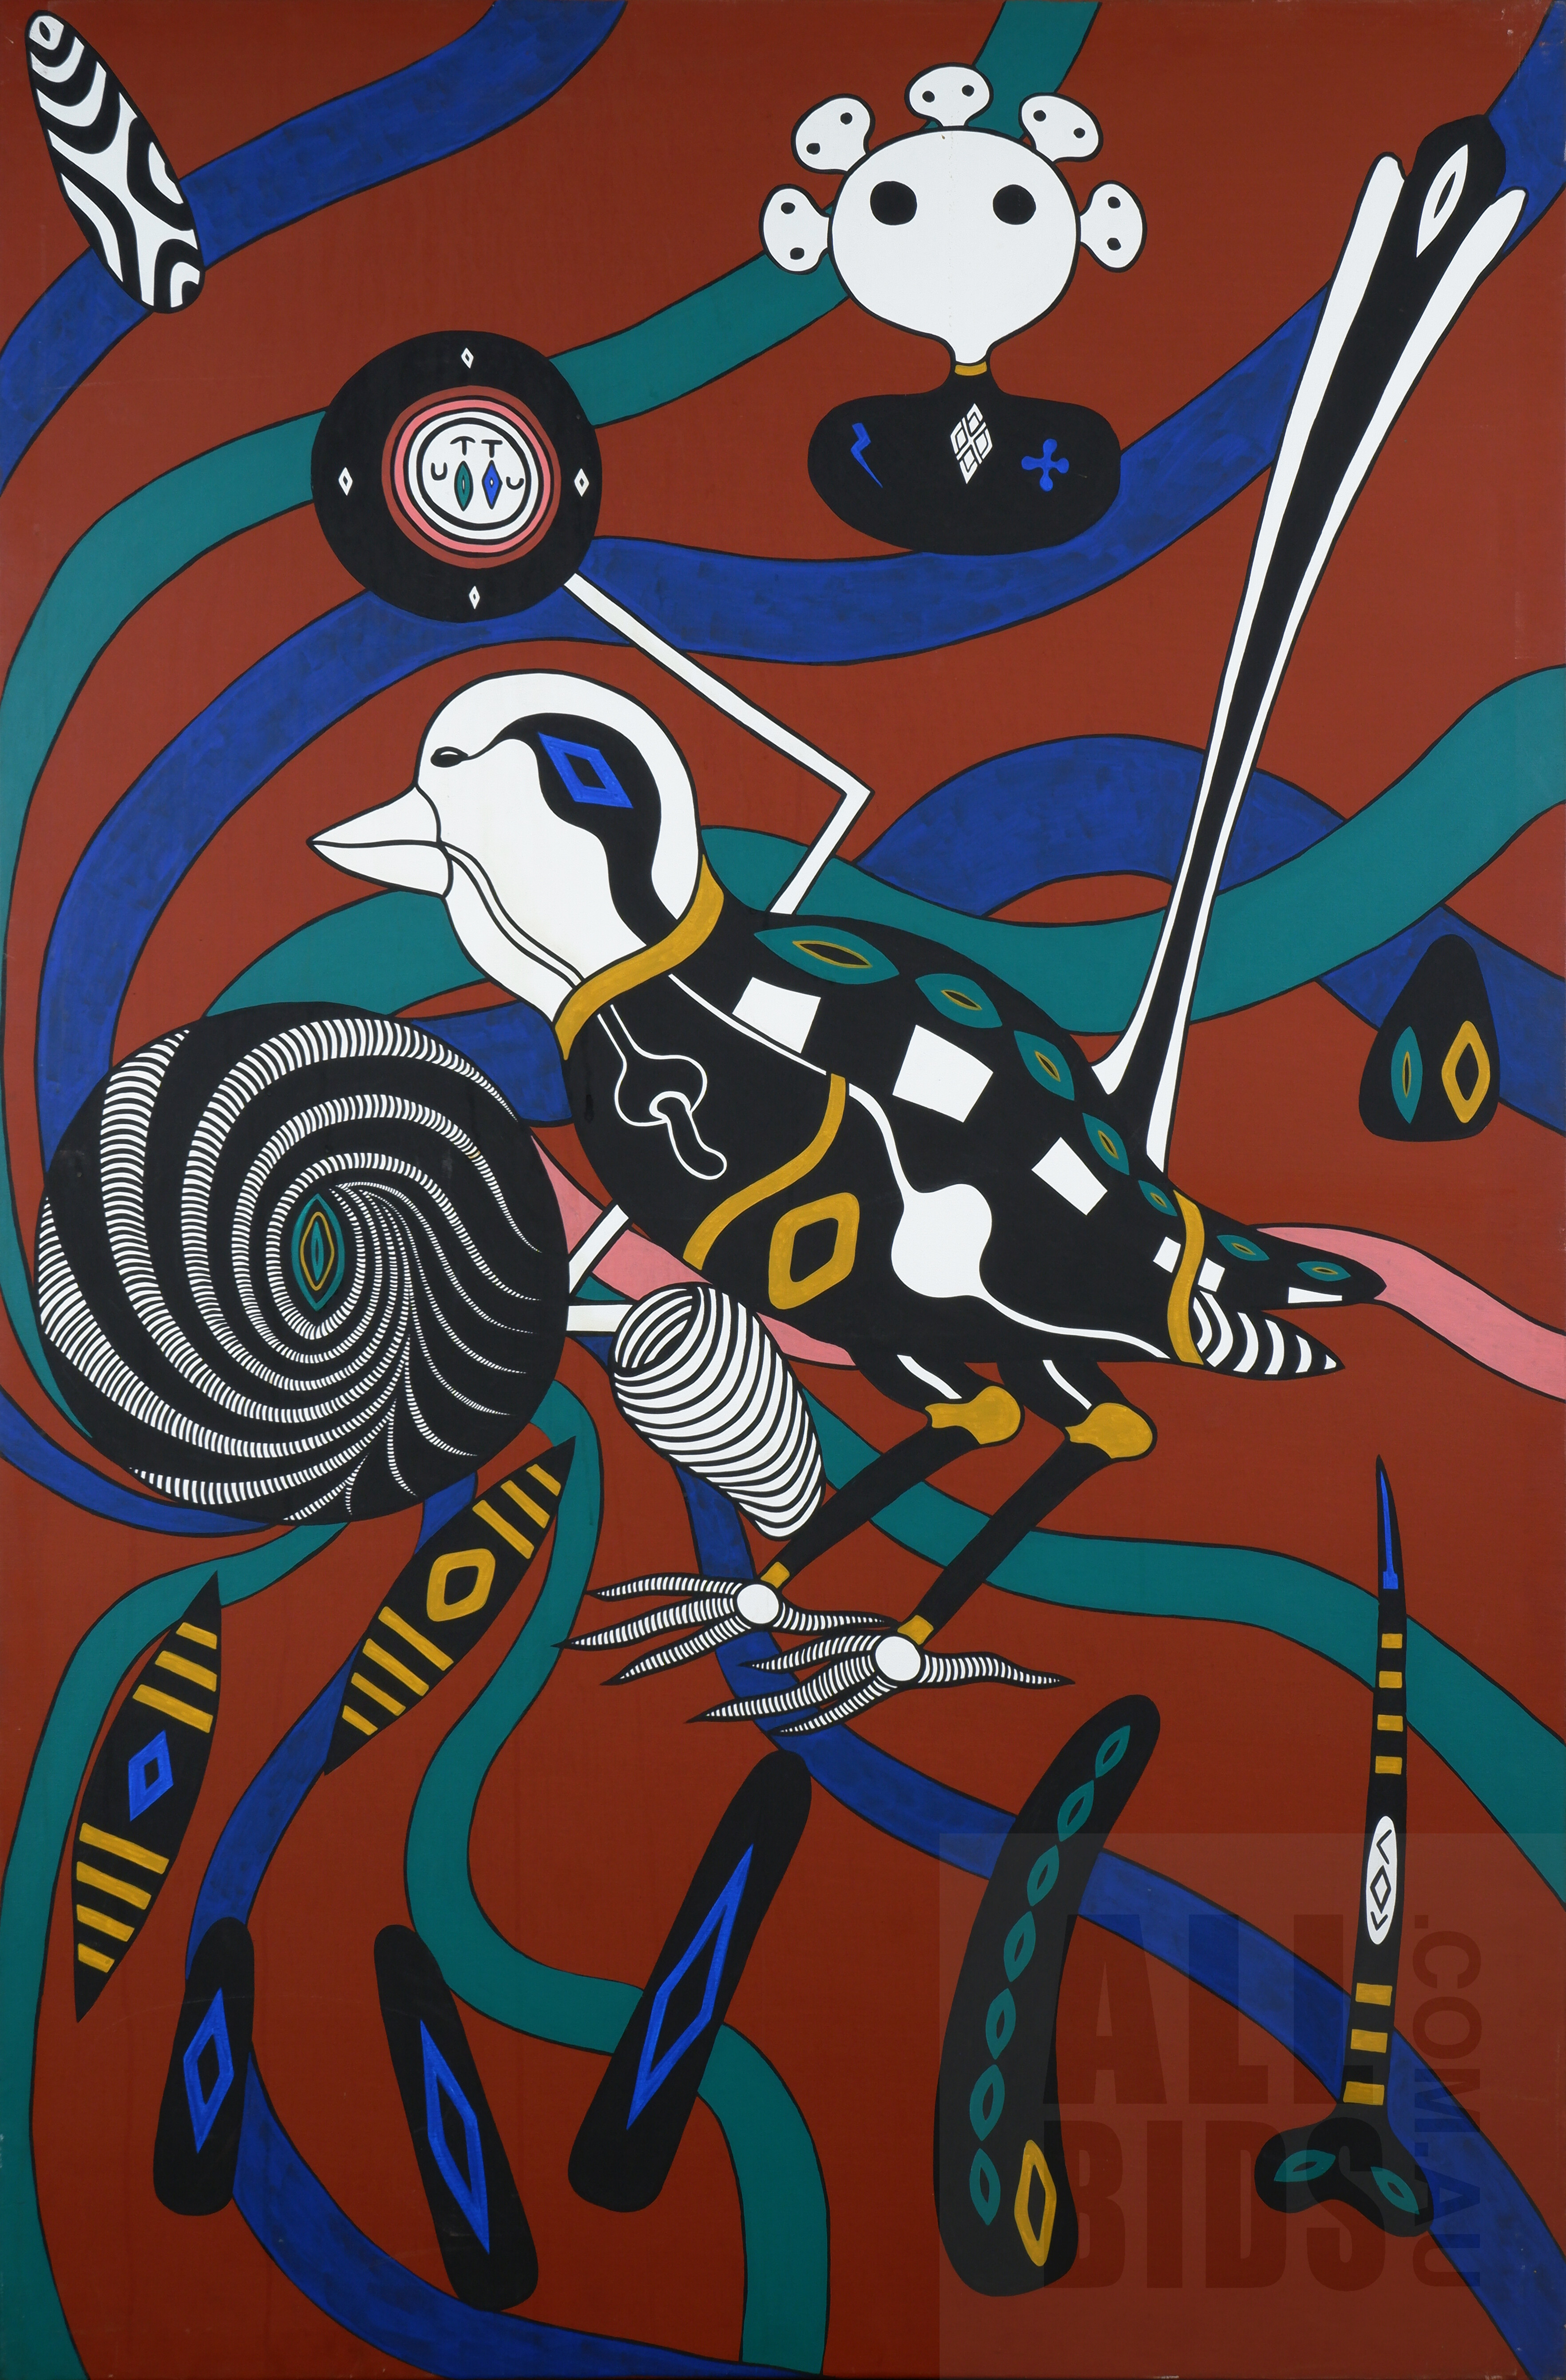 'Graham Rennie Biggibilla (born 1950), Bird, Acrylic on Canvas, 182 x 121 cm'